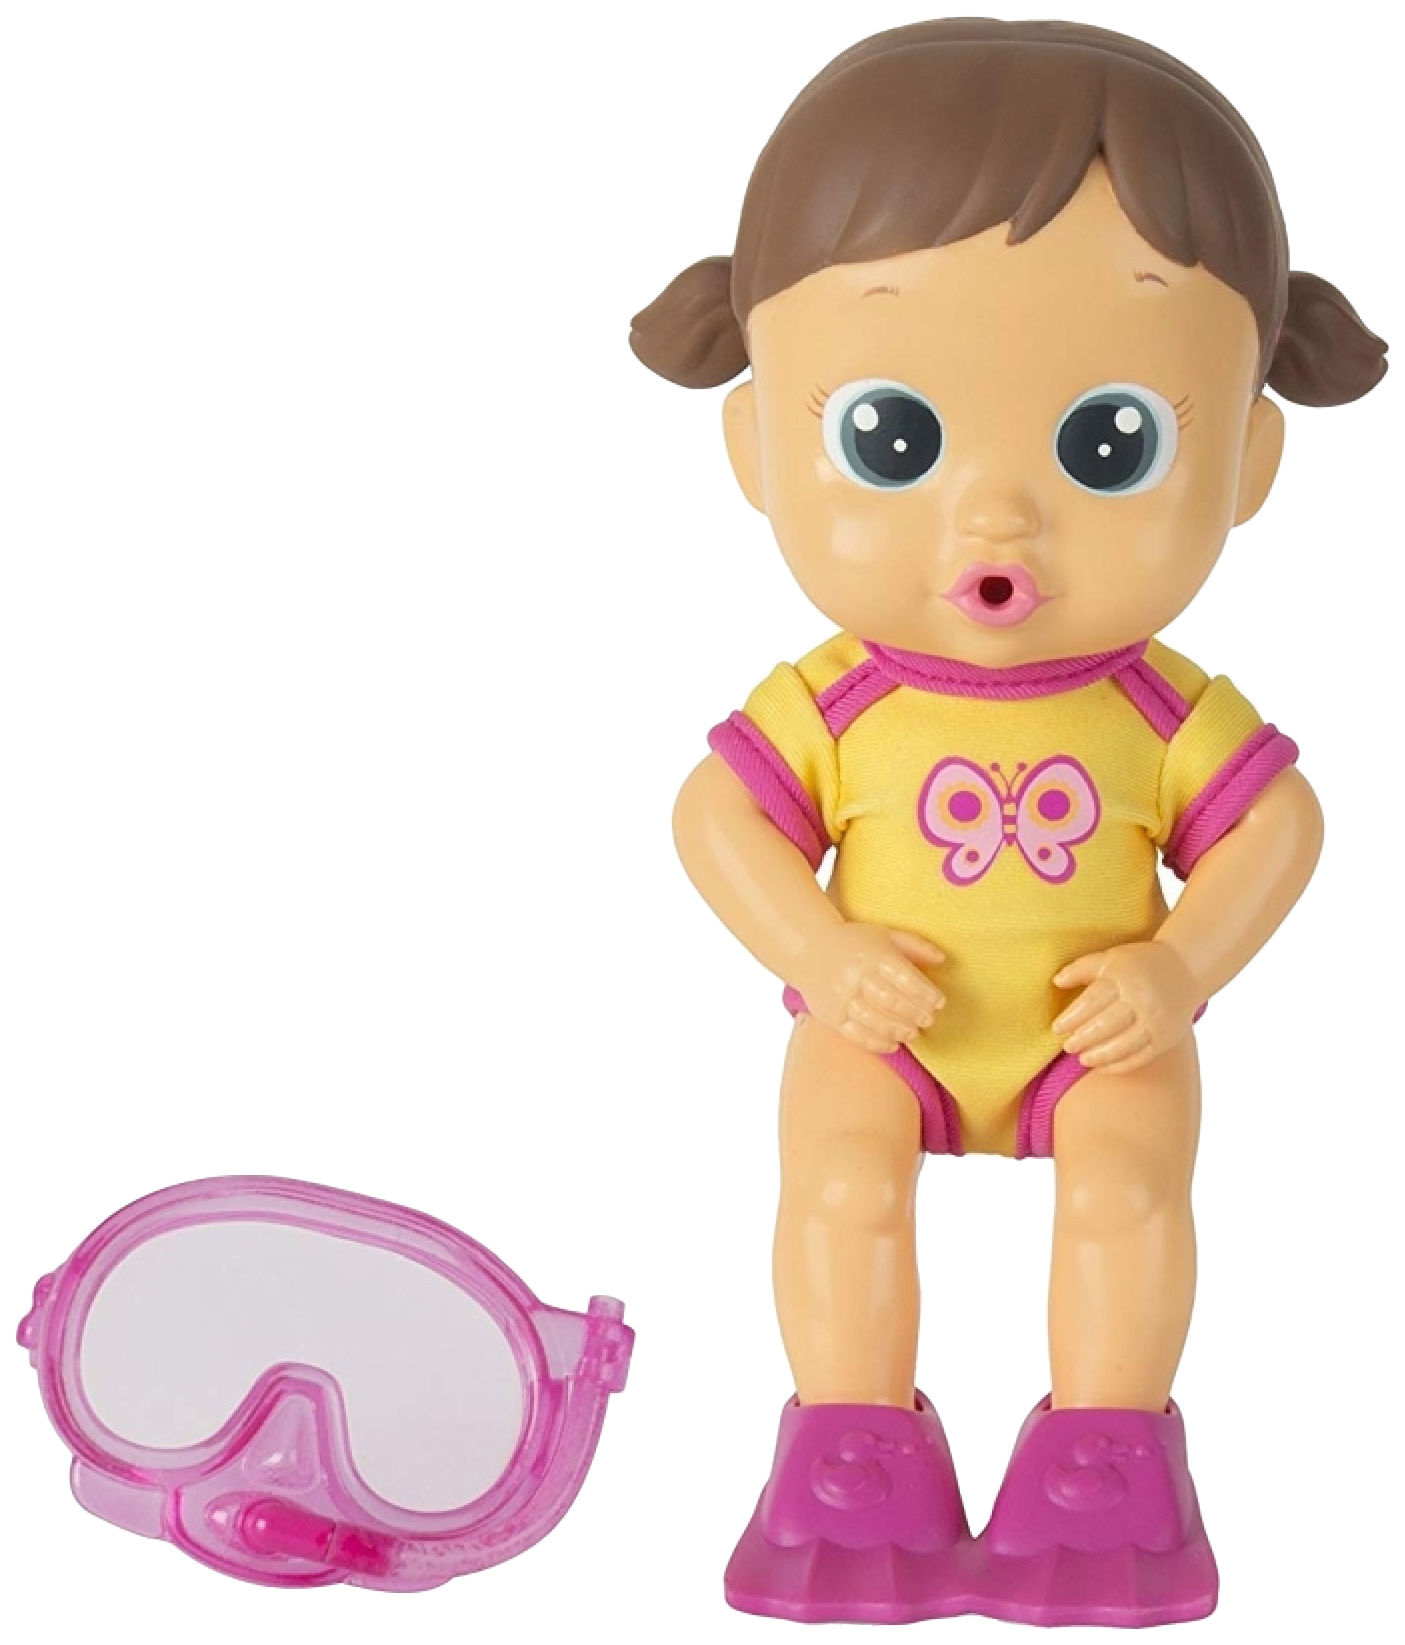 Кукла для купания Bloopies - Лавли, в открытой коробке, 24 см IMC toys кукла для купания bloopies коби в открытой коробке 24 см imc toys